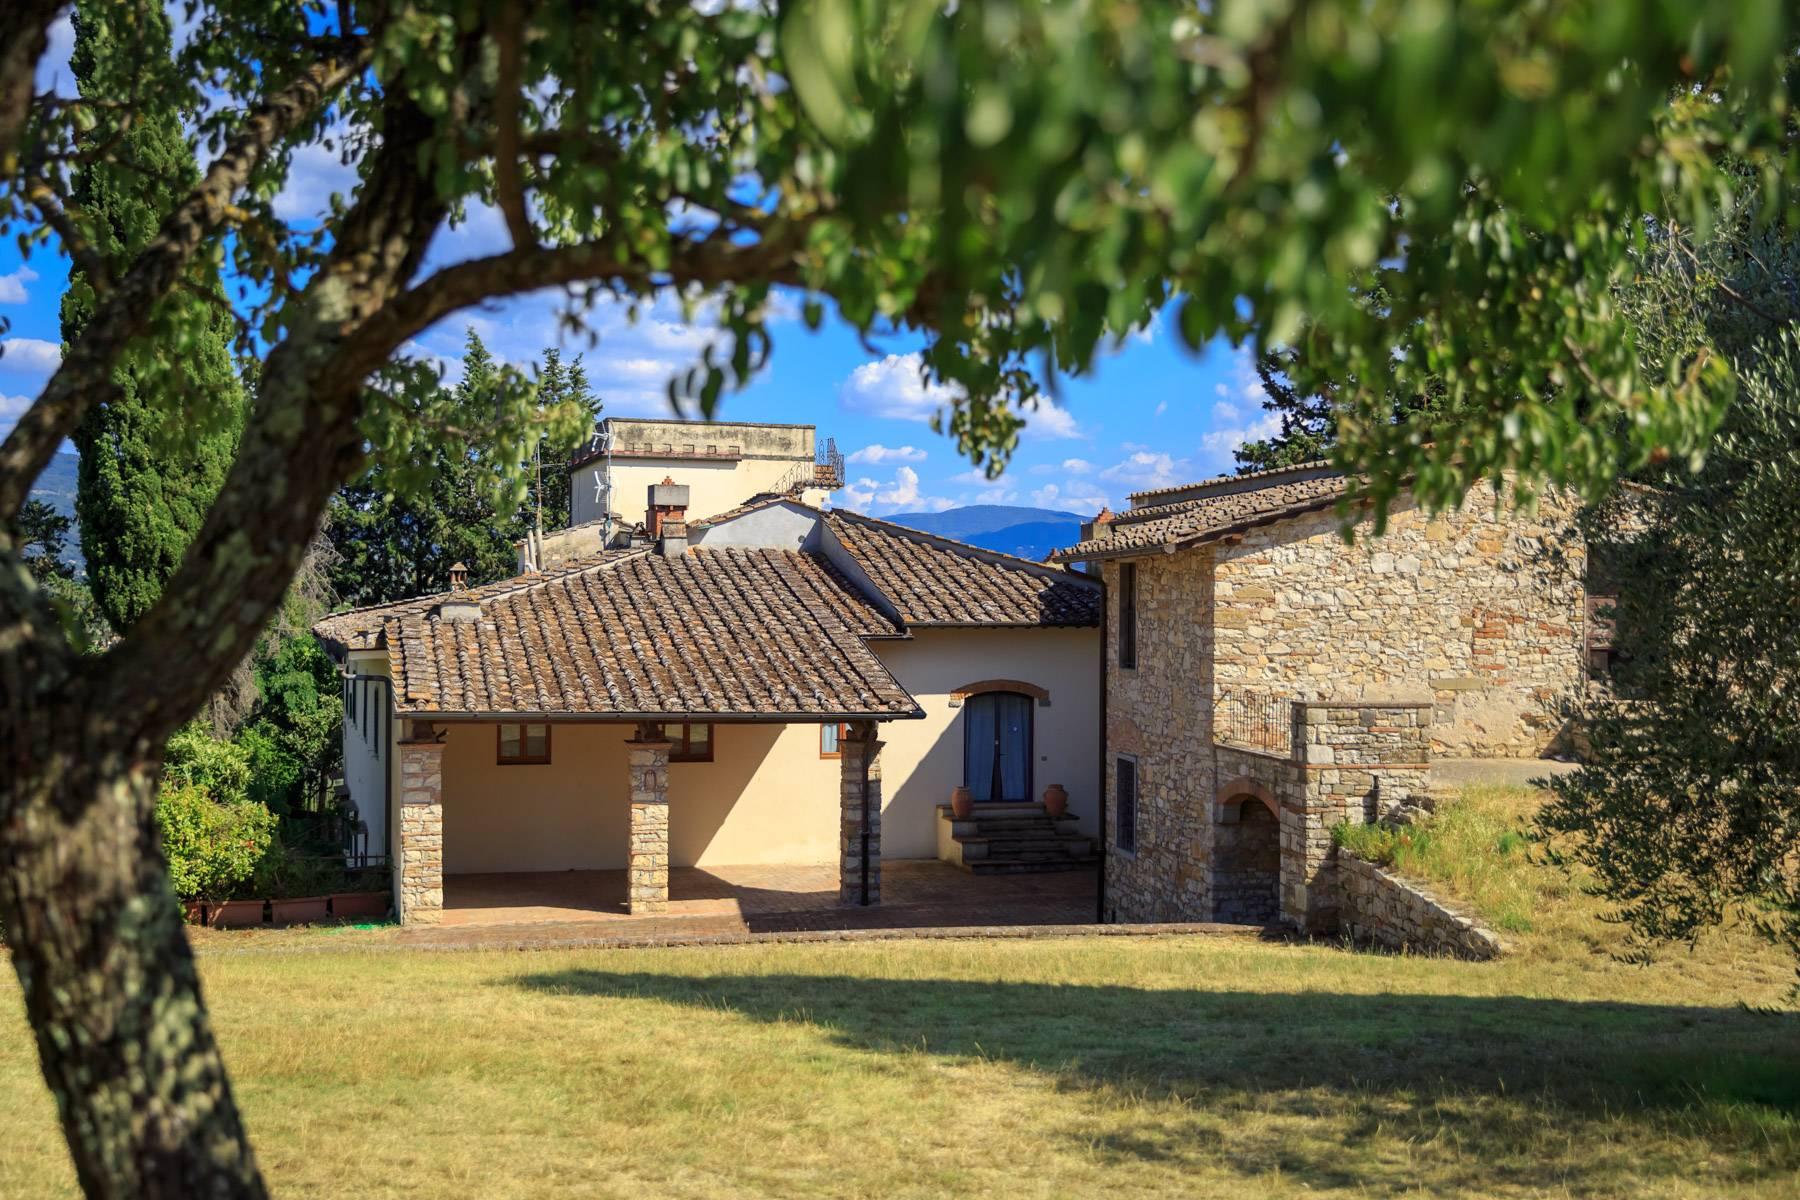 Grande villa antica con oliveto a 10 minuti da Firenze - 10